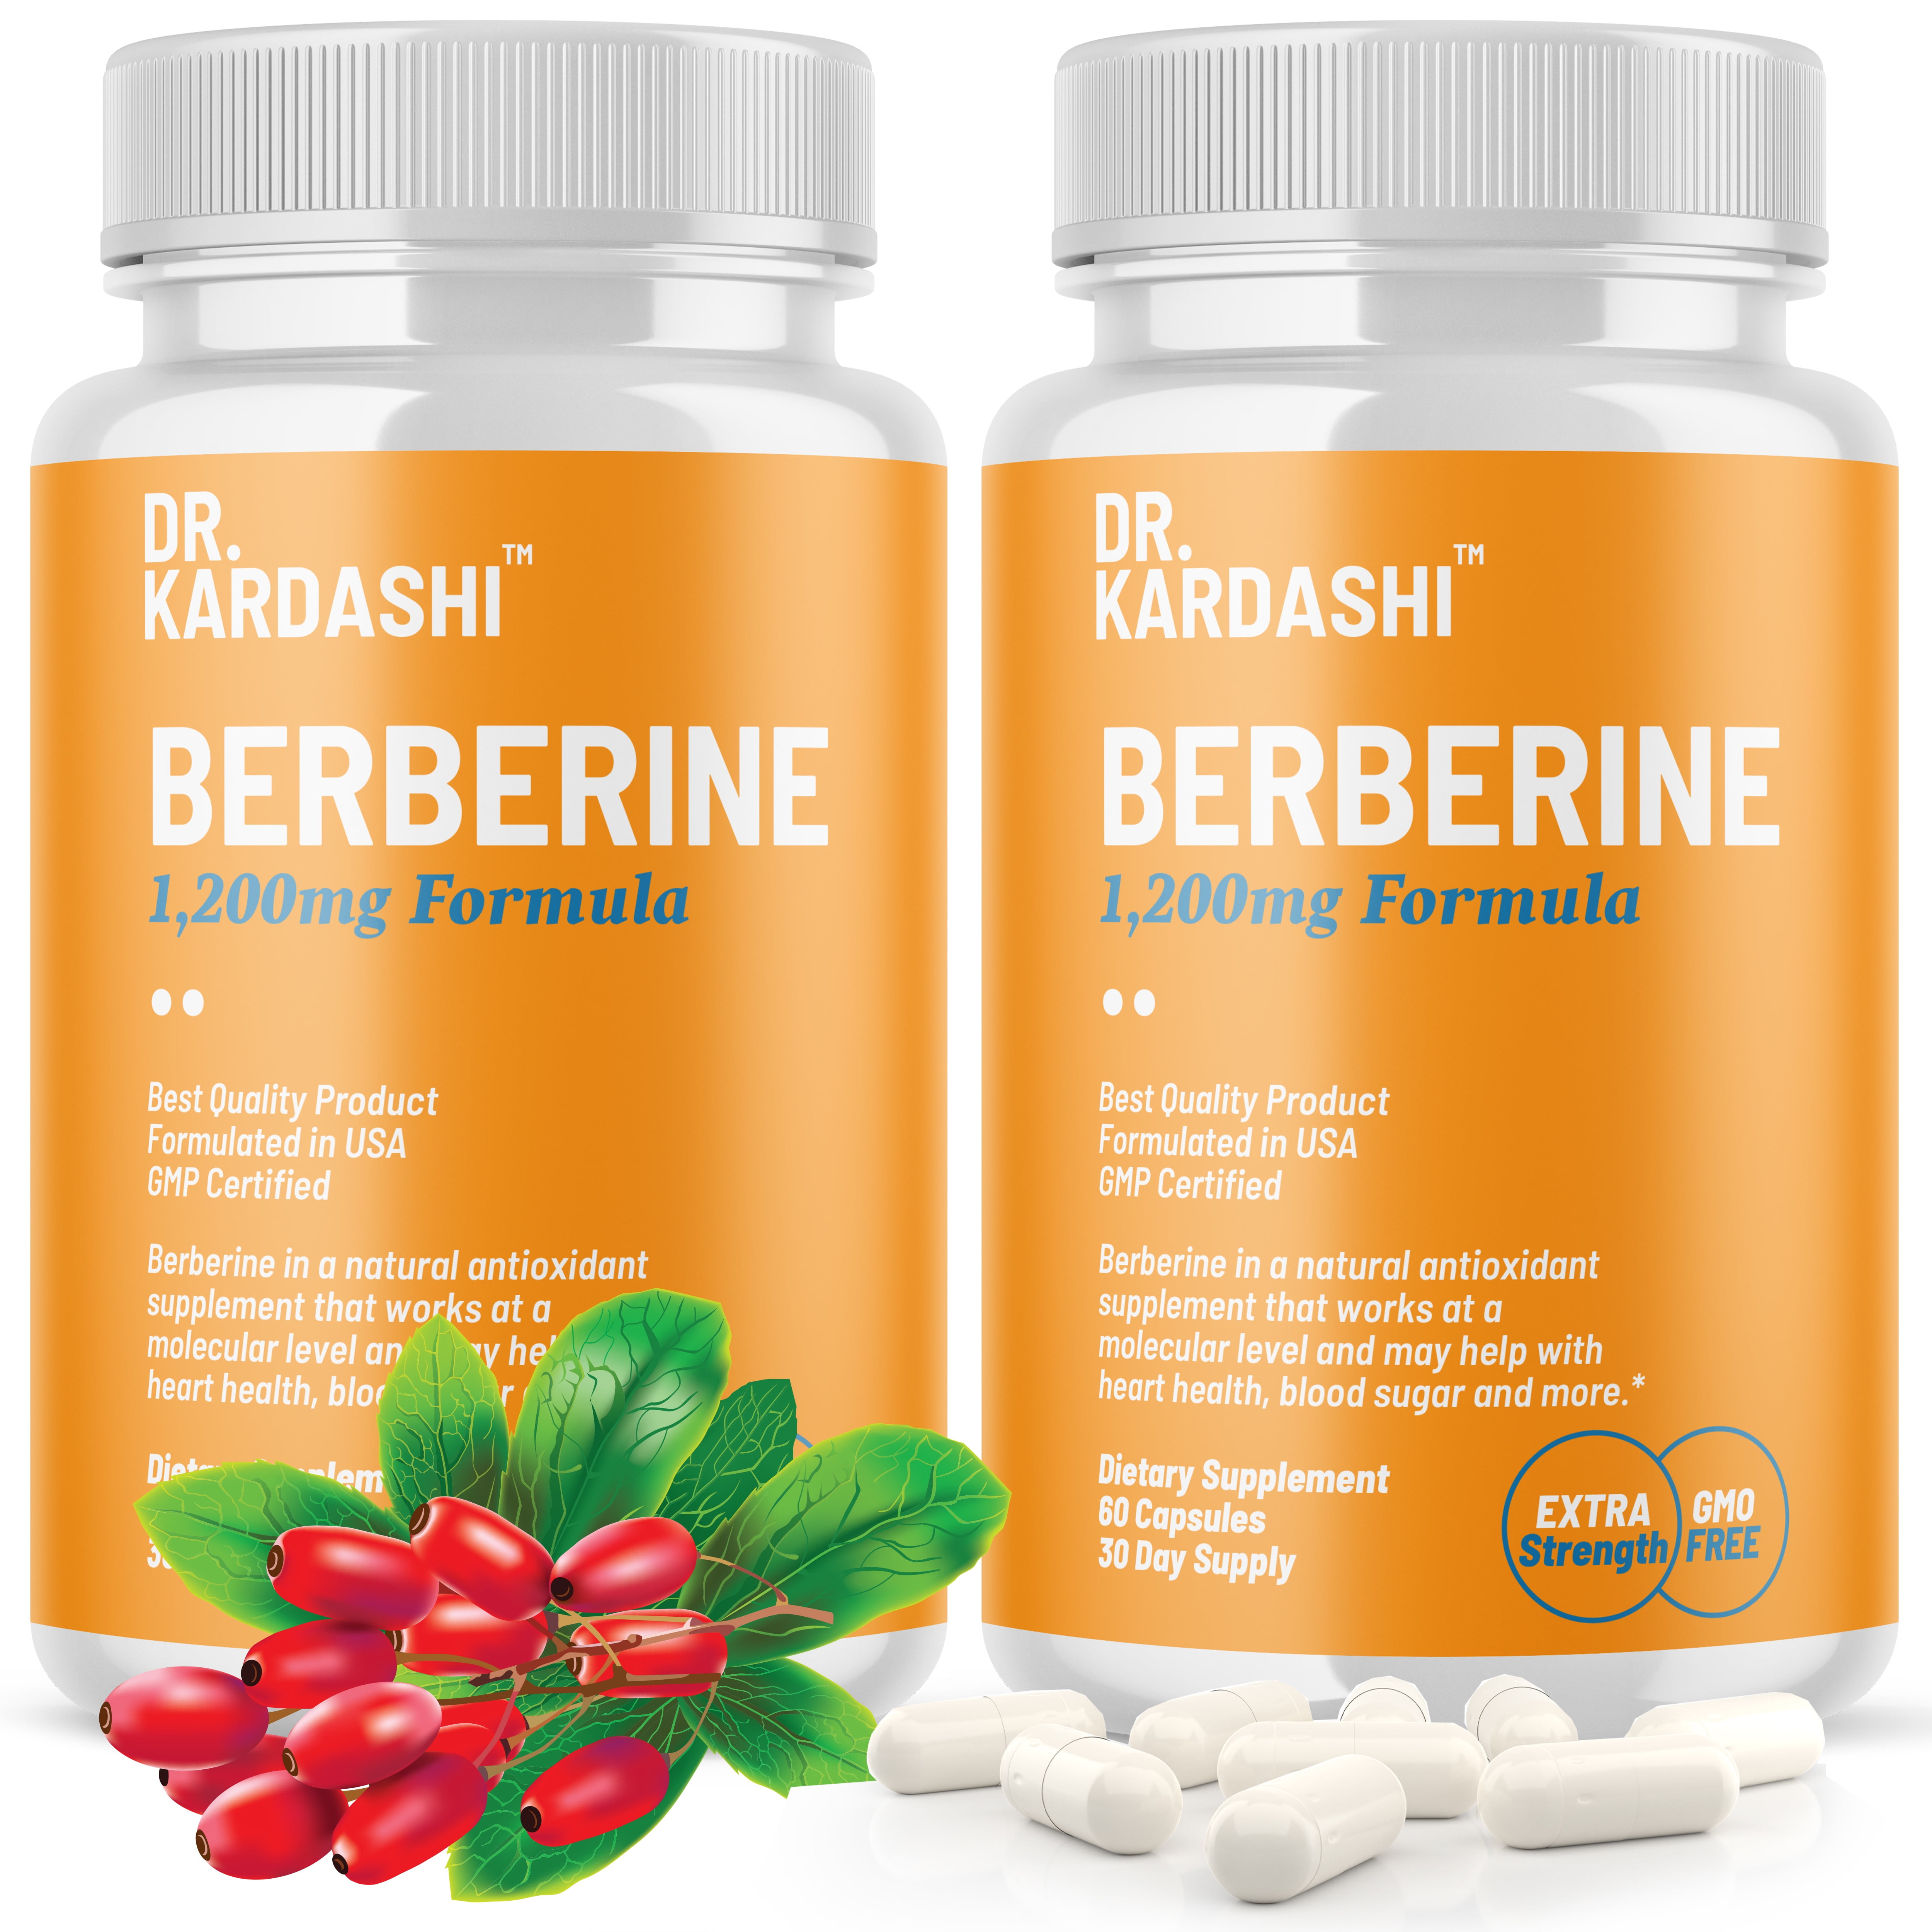 berberine hcl